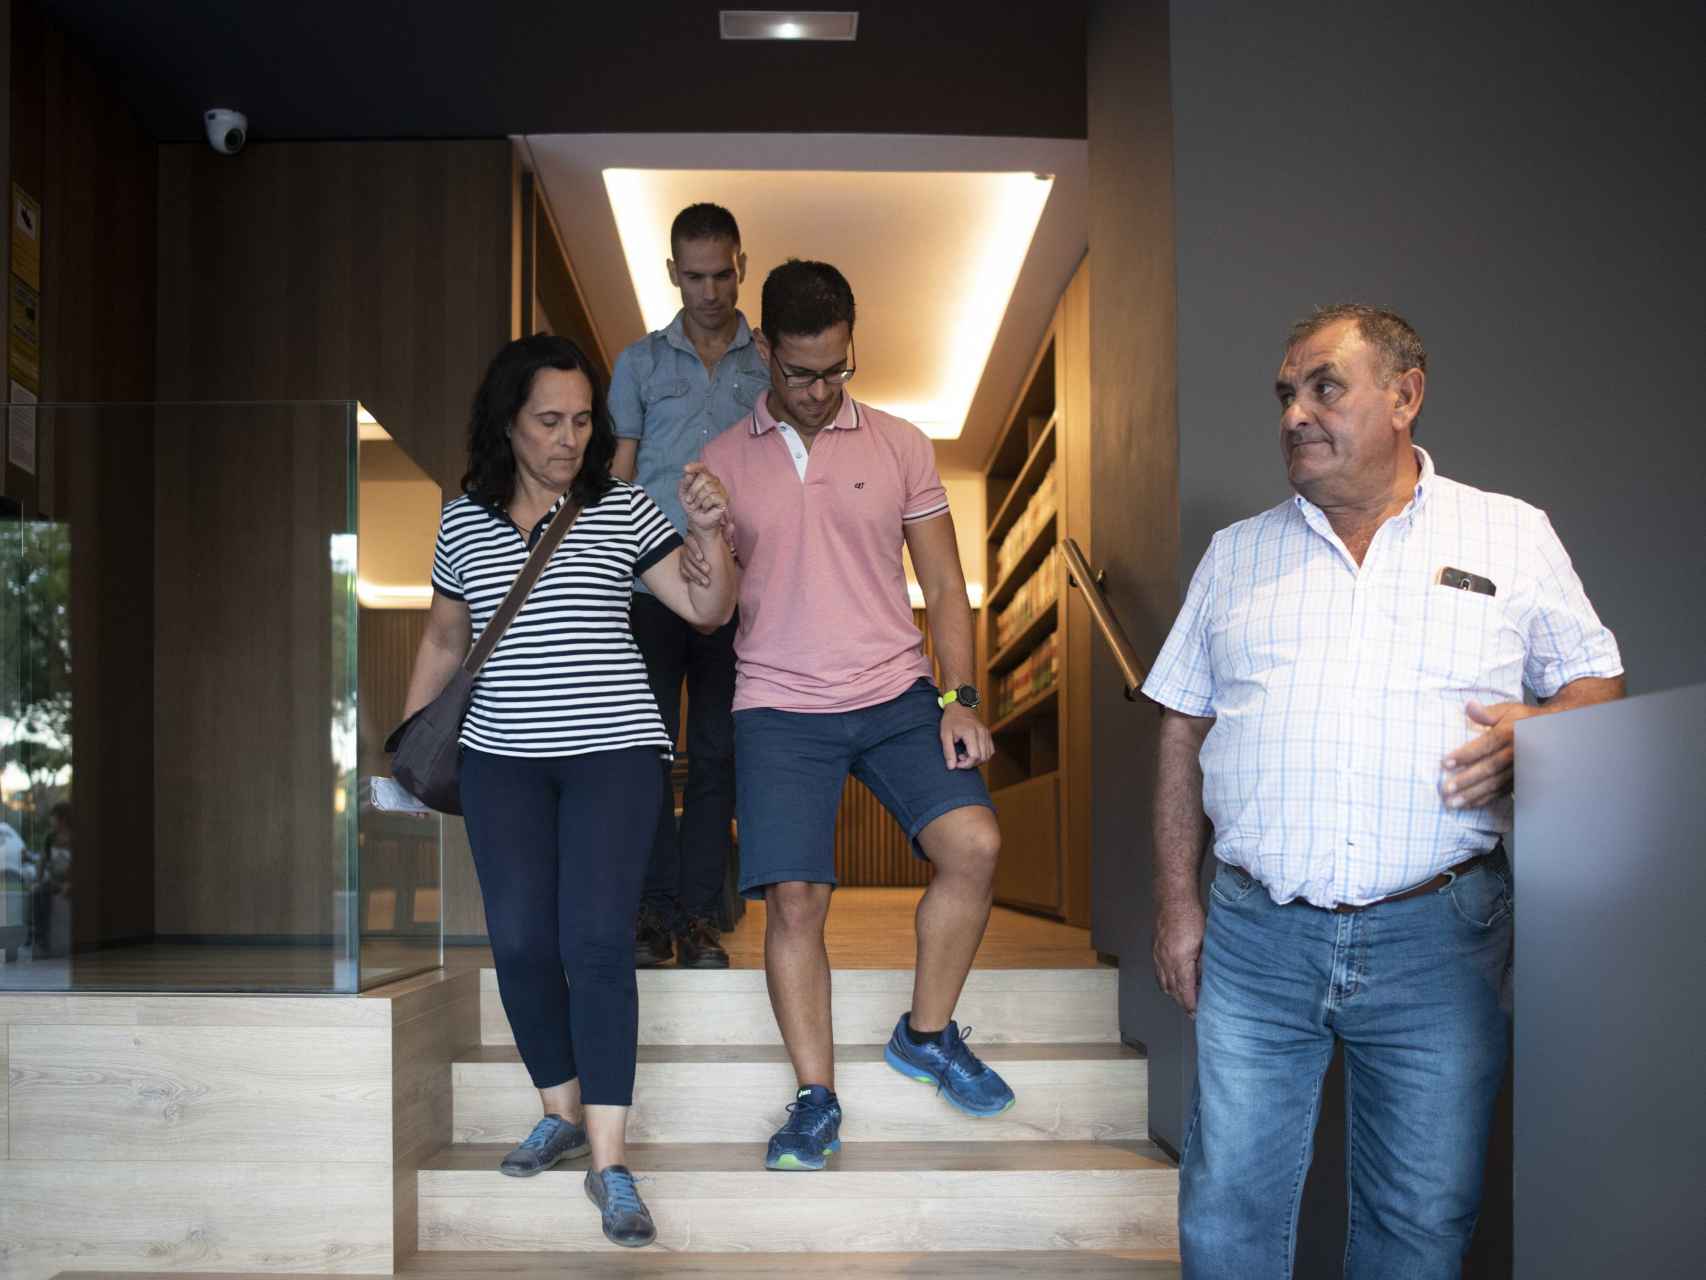 La familia de Adrián Vázquez (centro) saliendo del despacho de su abogado.